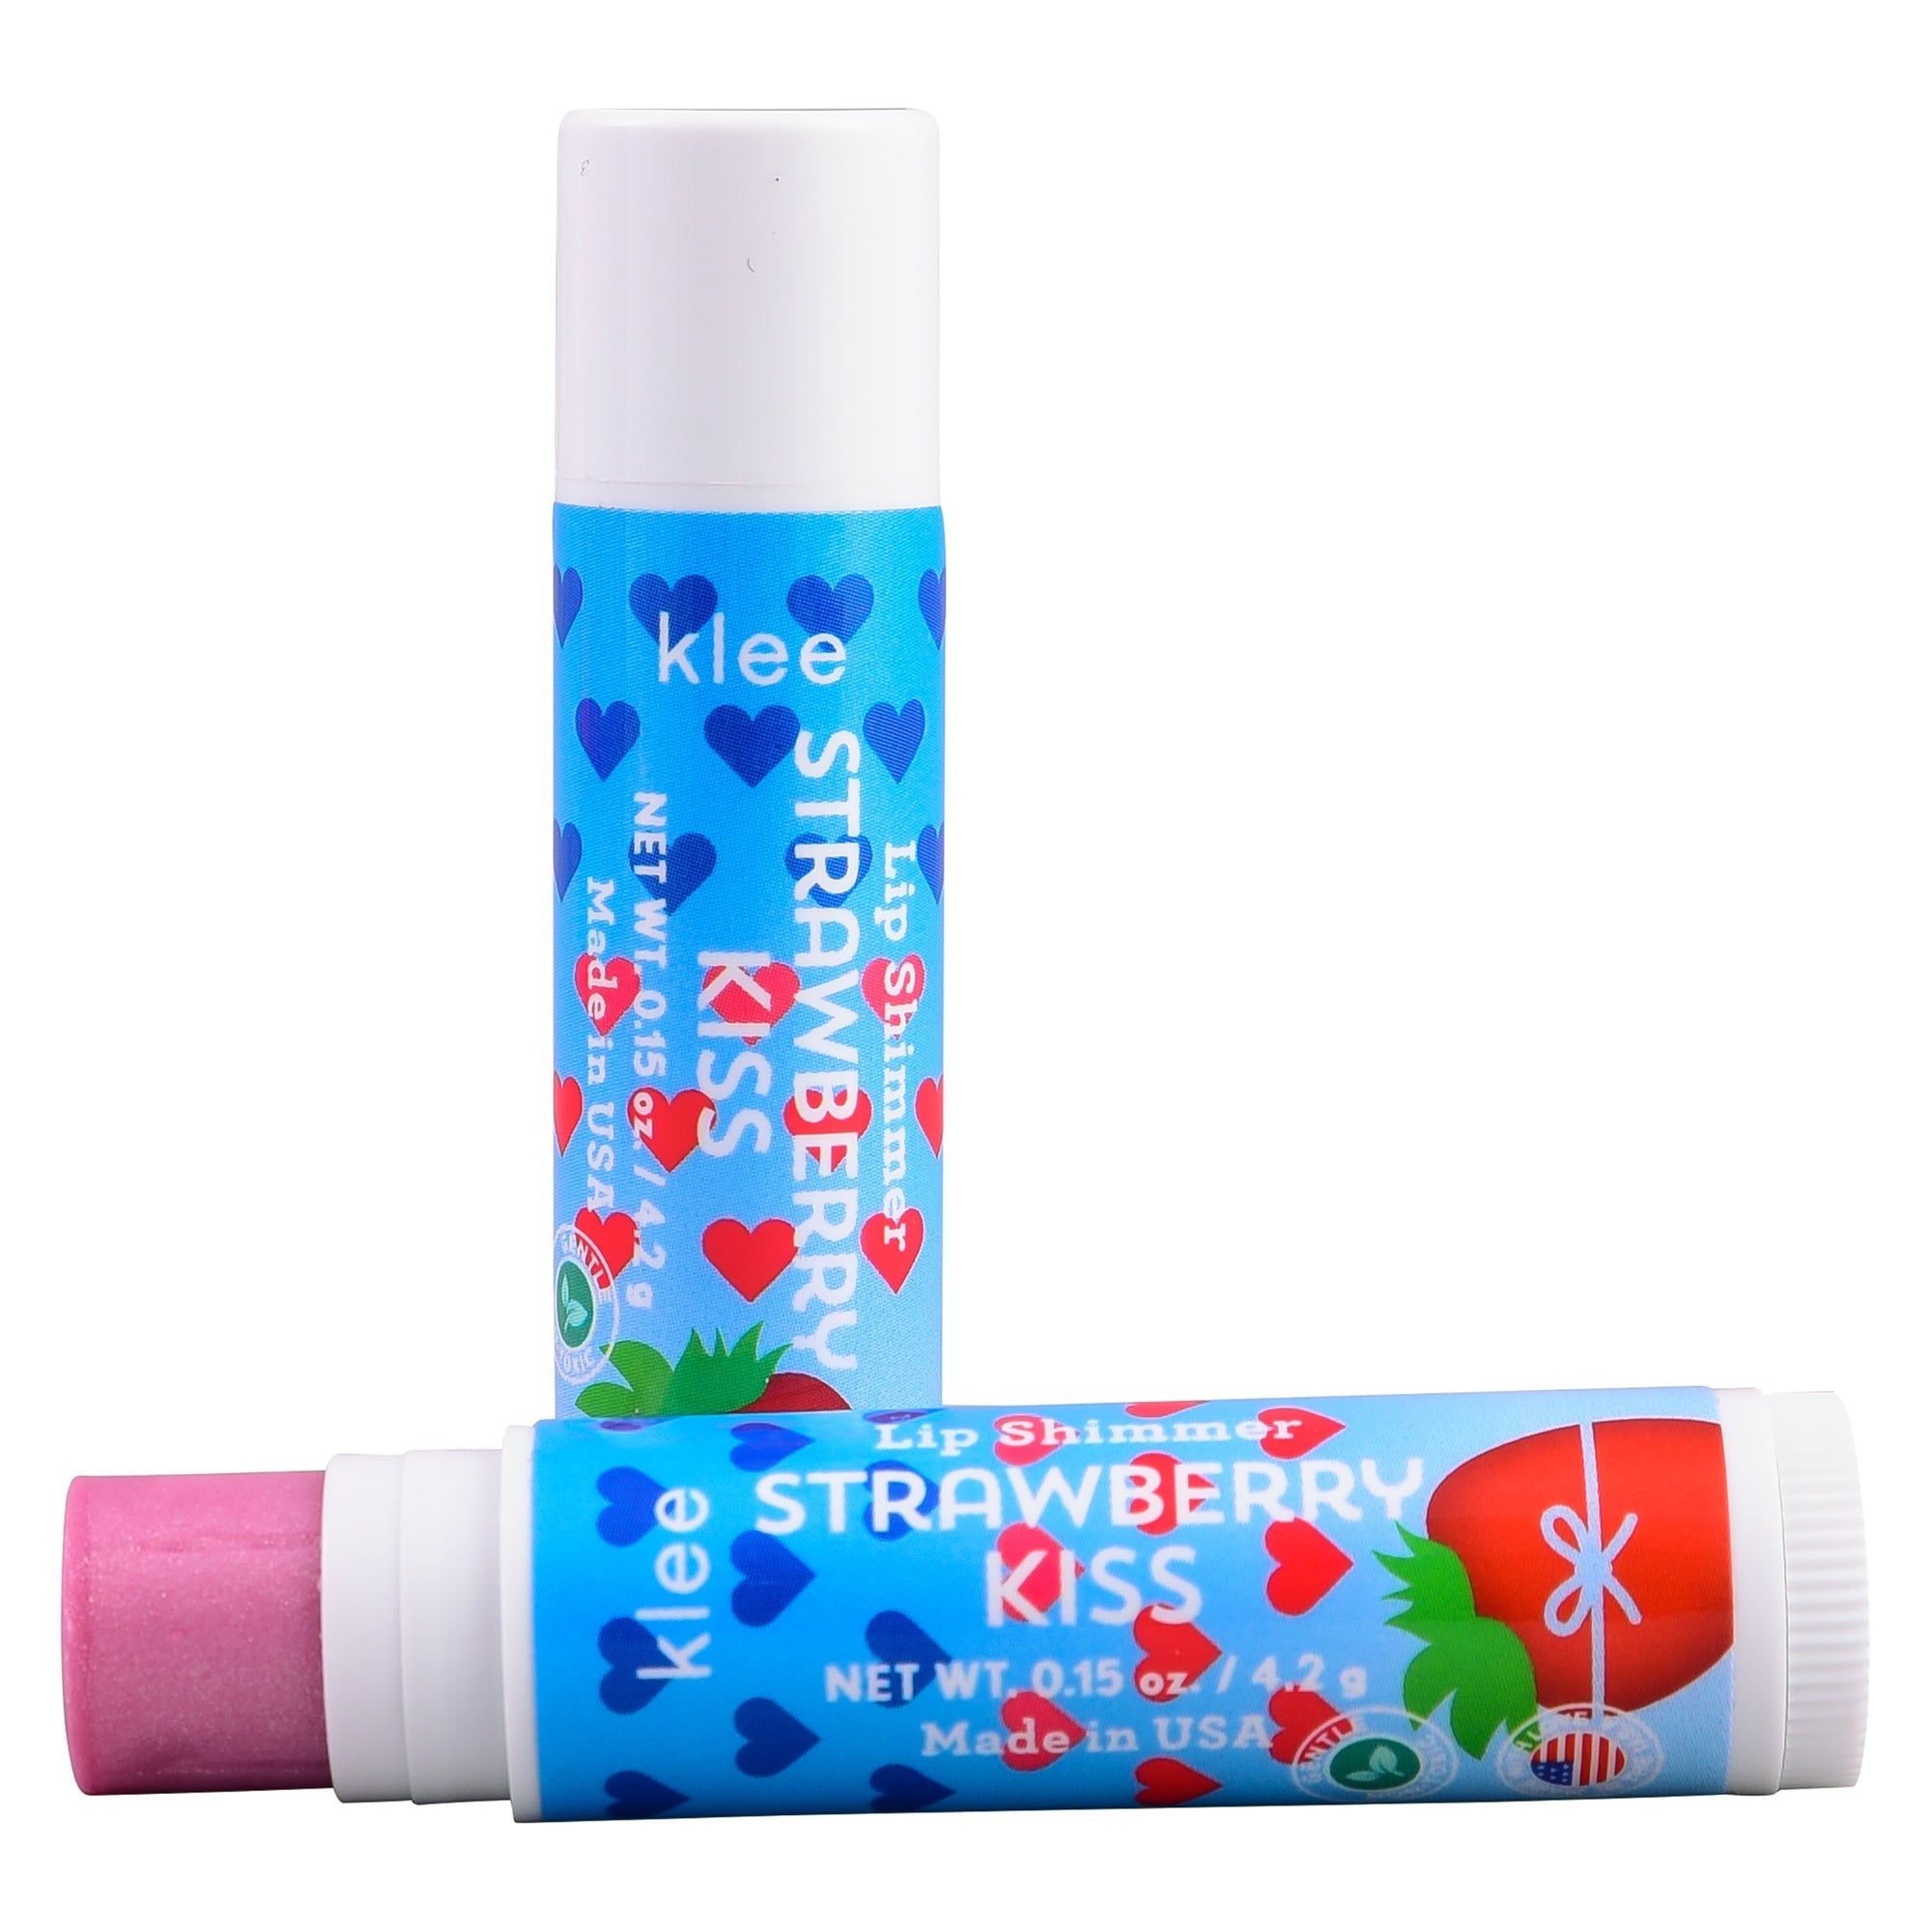 Klee Naturals Tinted Lip Shimmer 天然果味有色唇蜜 4.2g